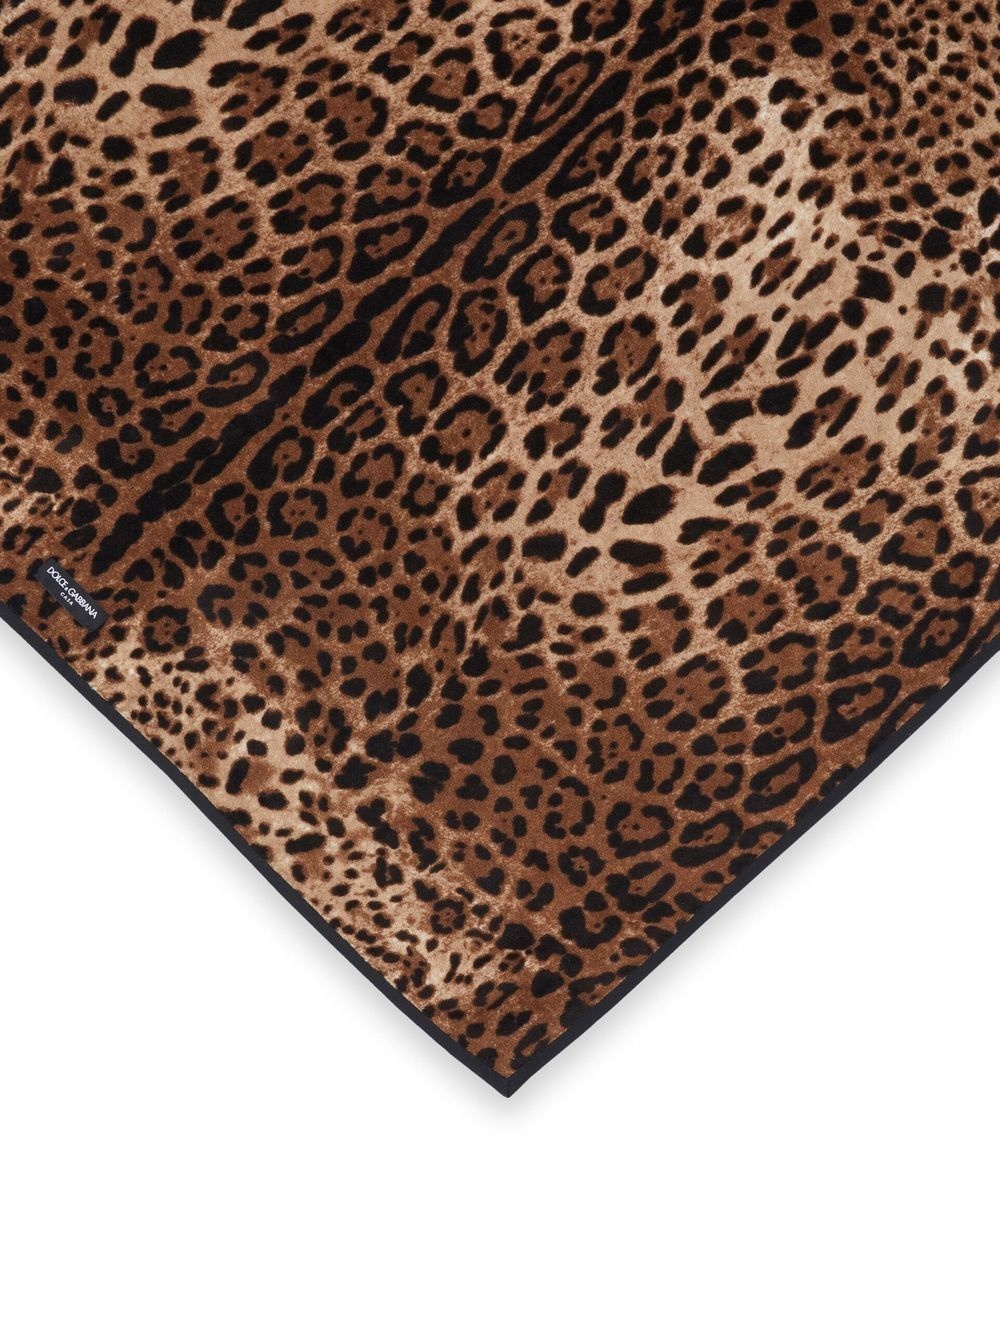 leopard-print cotton towel - 2